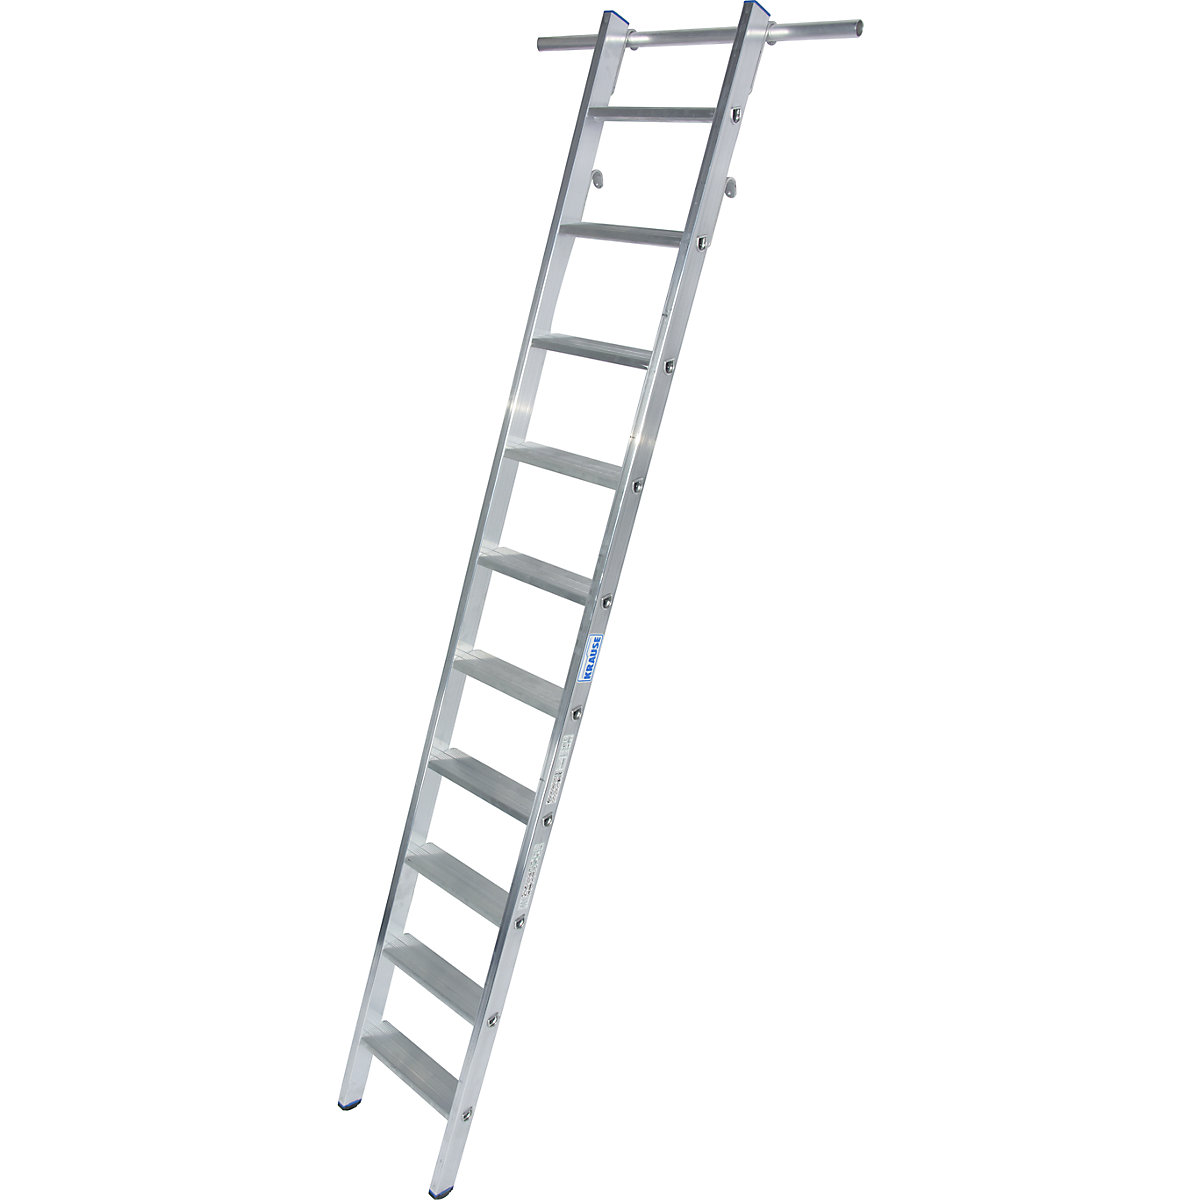 Lépcsőfokos állványlétra – KRAUSE, beakasztható, 2 pár akasztóhoroggal, 10 lépcsőfok-4